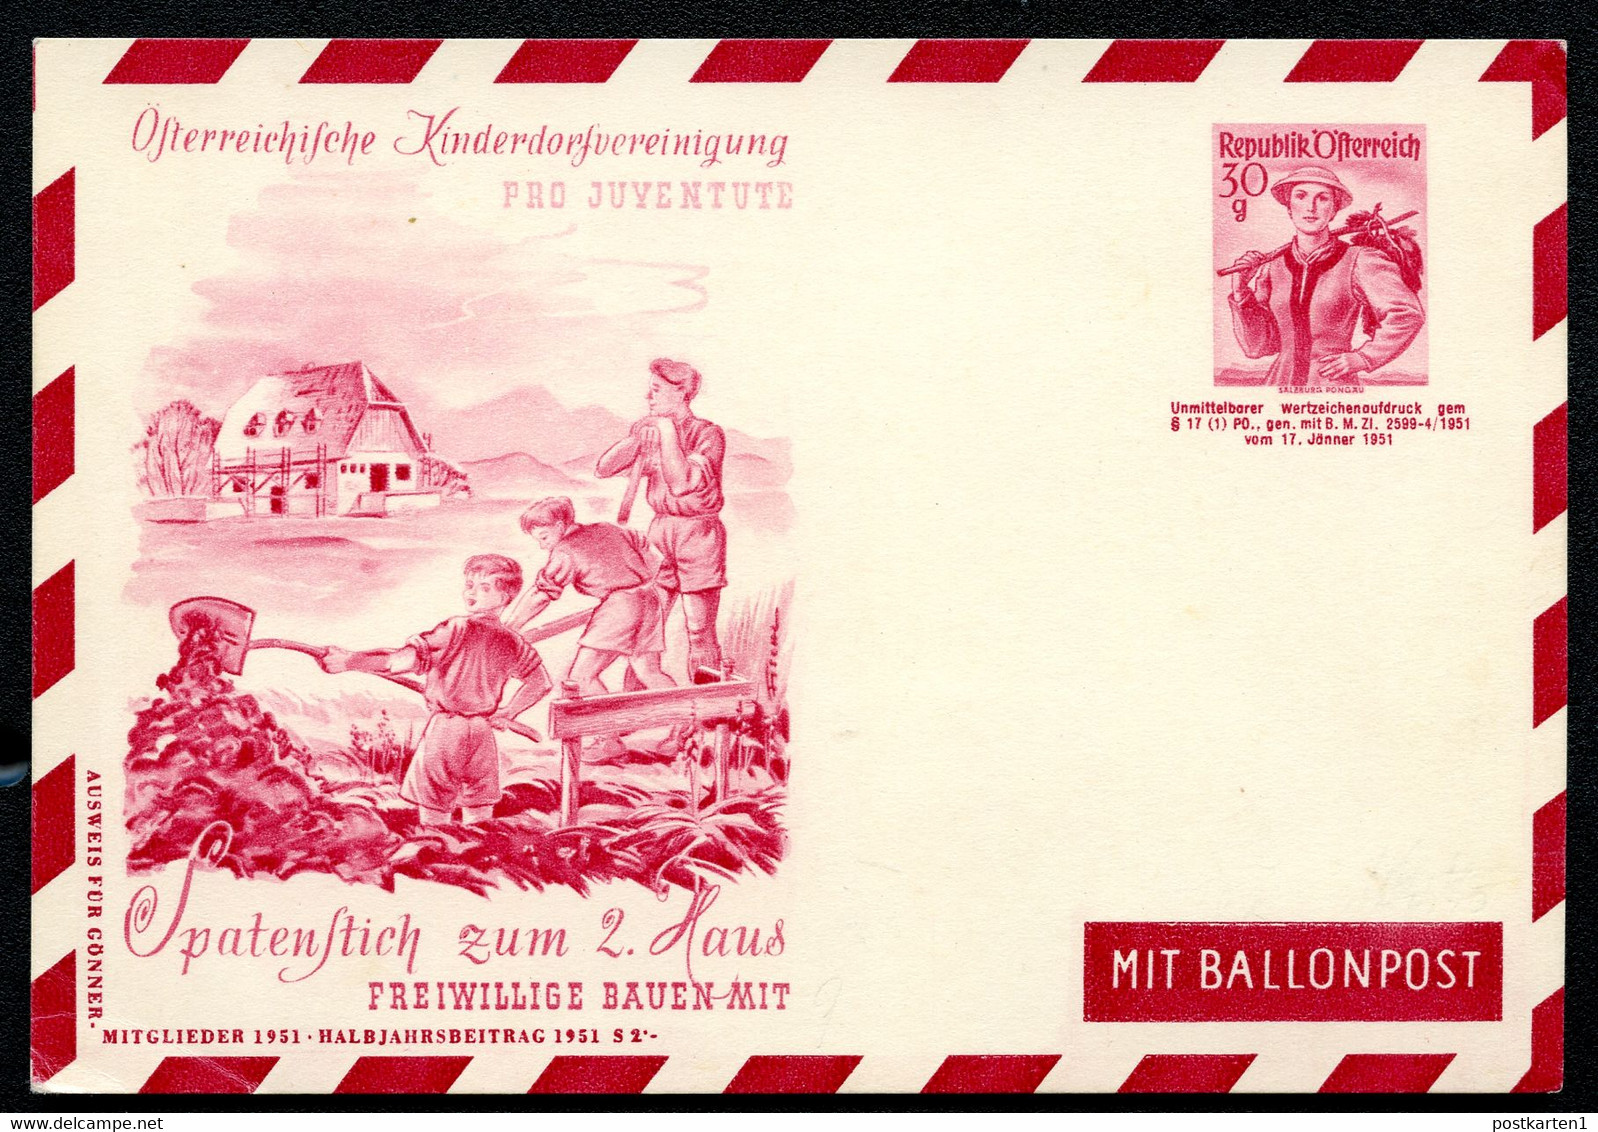 ÖSTERREICH PRIVAT-LUFTPOST-POSTKARTE PLP84 KINDERDORFVEREINIGUNG 1951 - Postcards